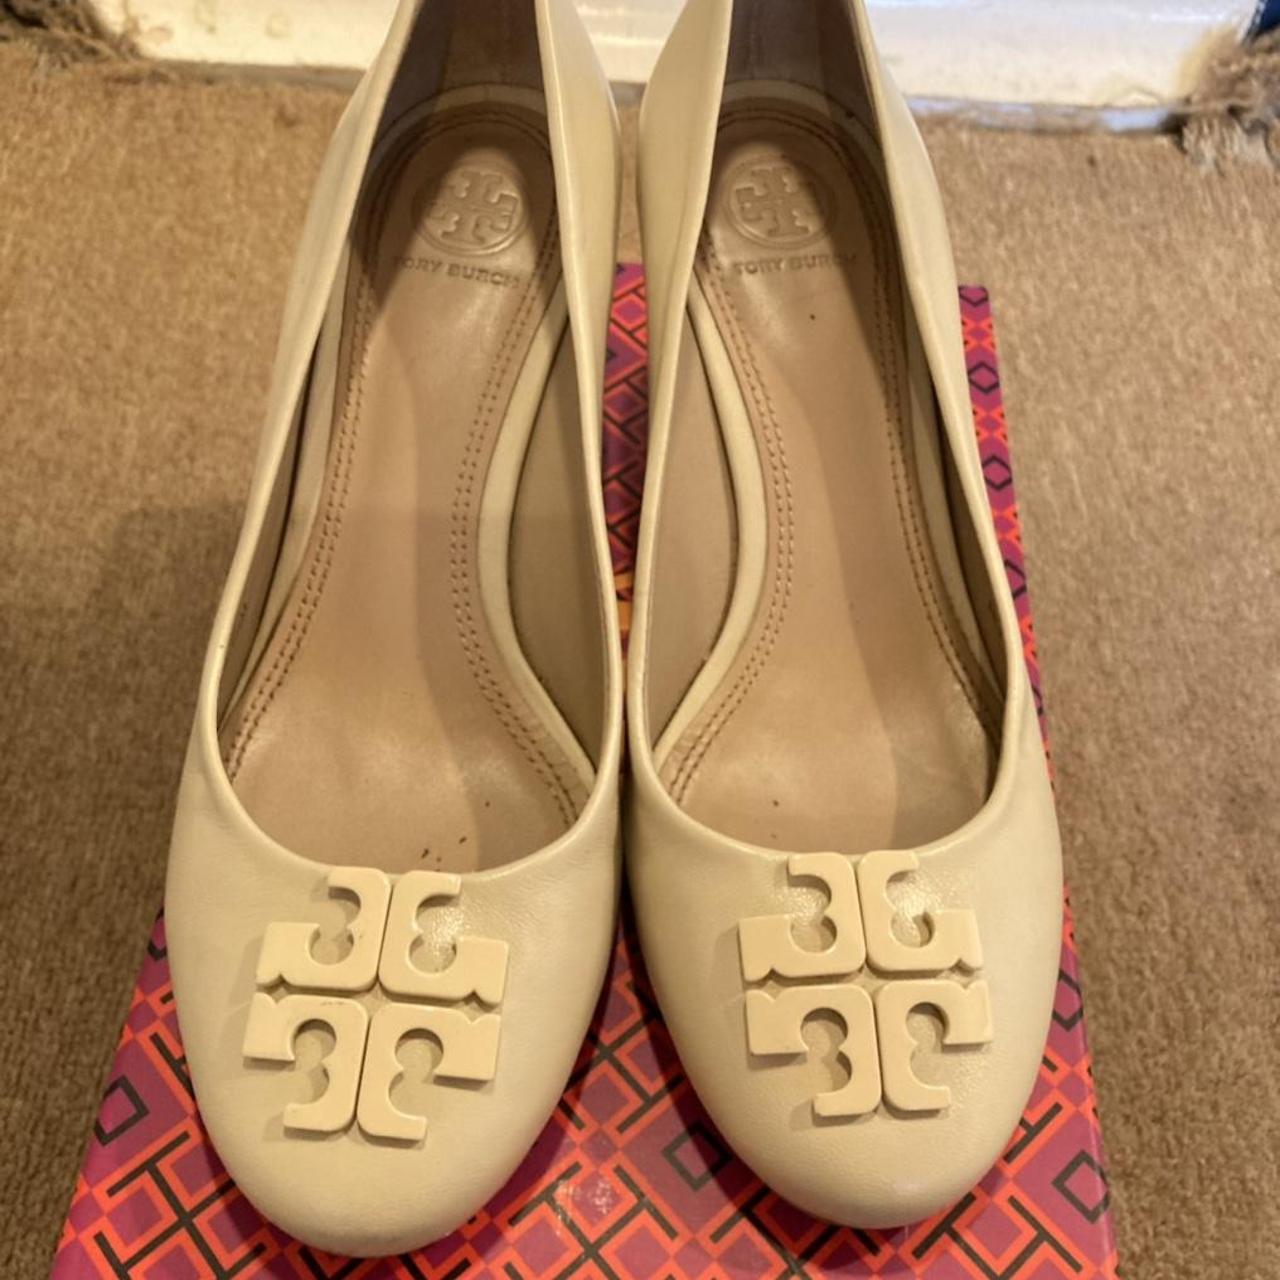 bitter gavnlig godkende Tory Burch wedge shoes cream colour size UK 5 / US... - Depop